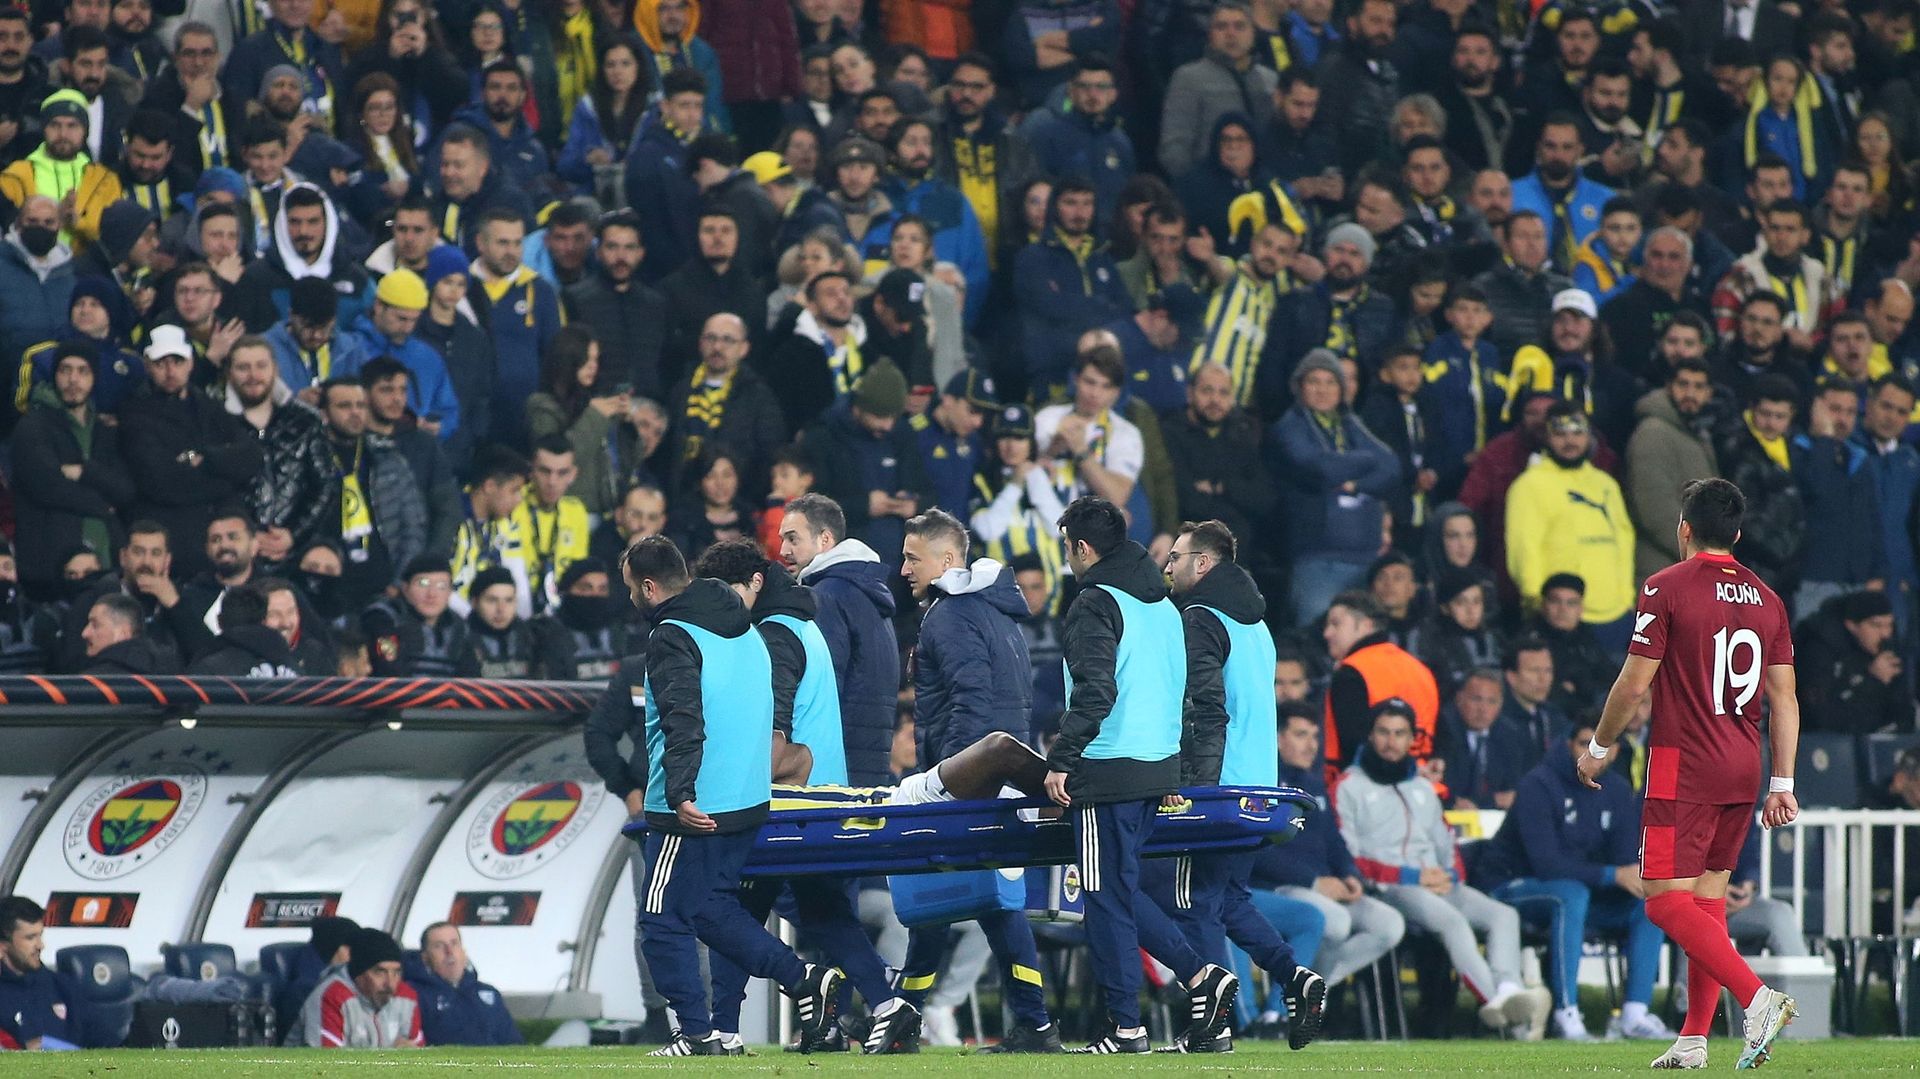 Michy Batshuayi sort sur civière avec Fenerbahçe lors du match d’Europa League